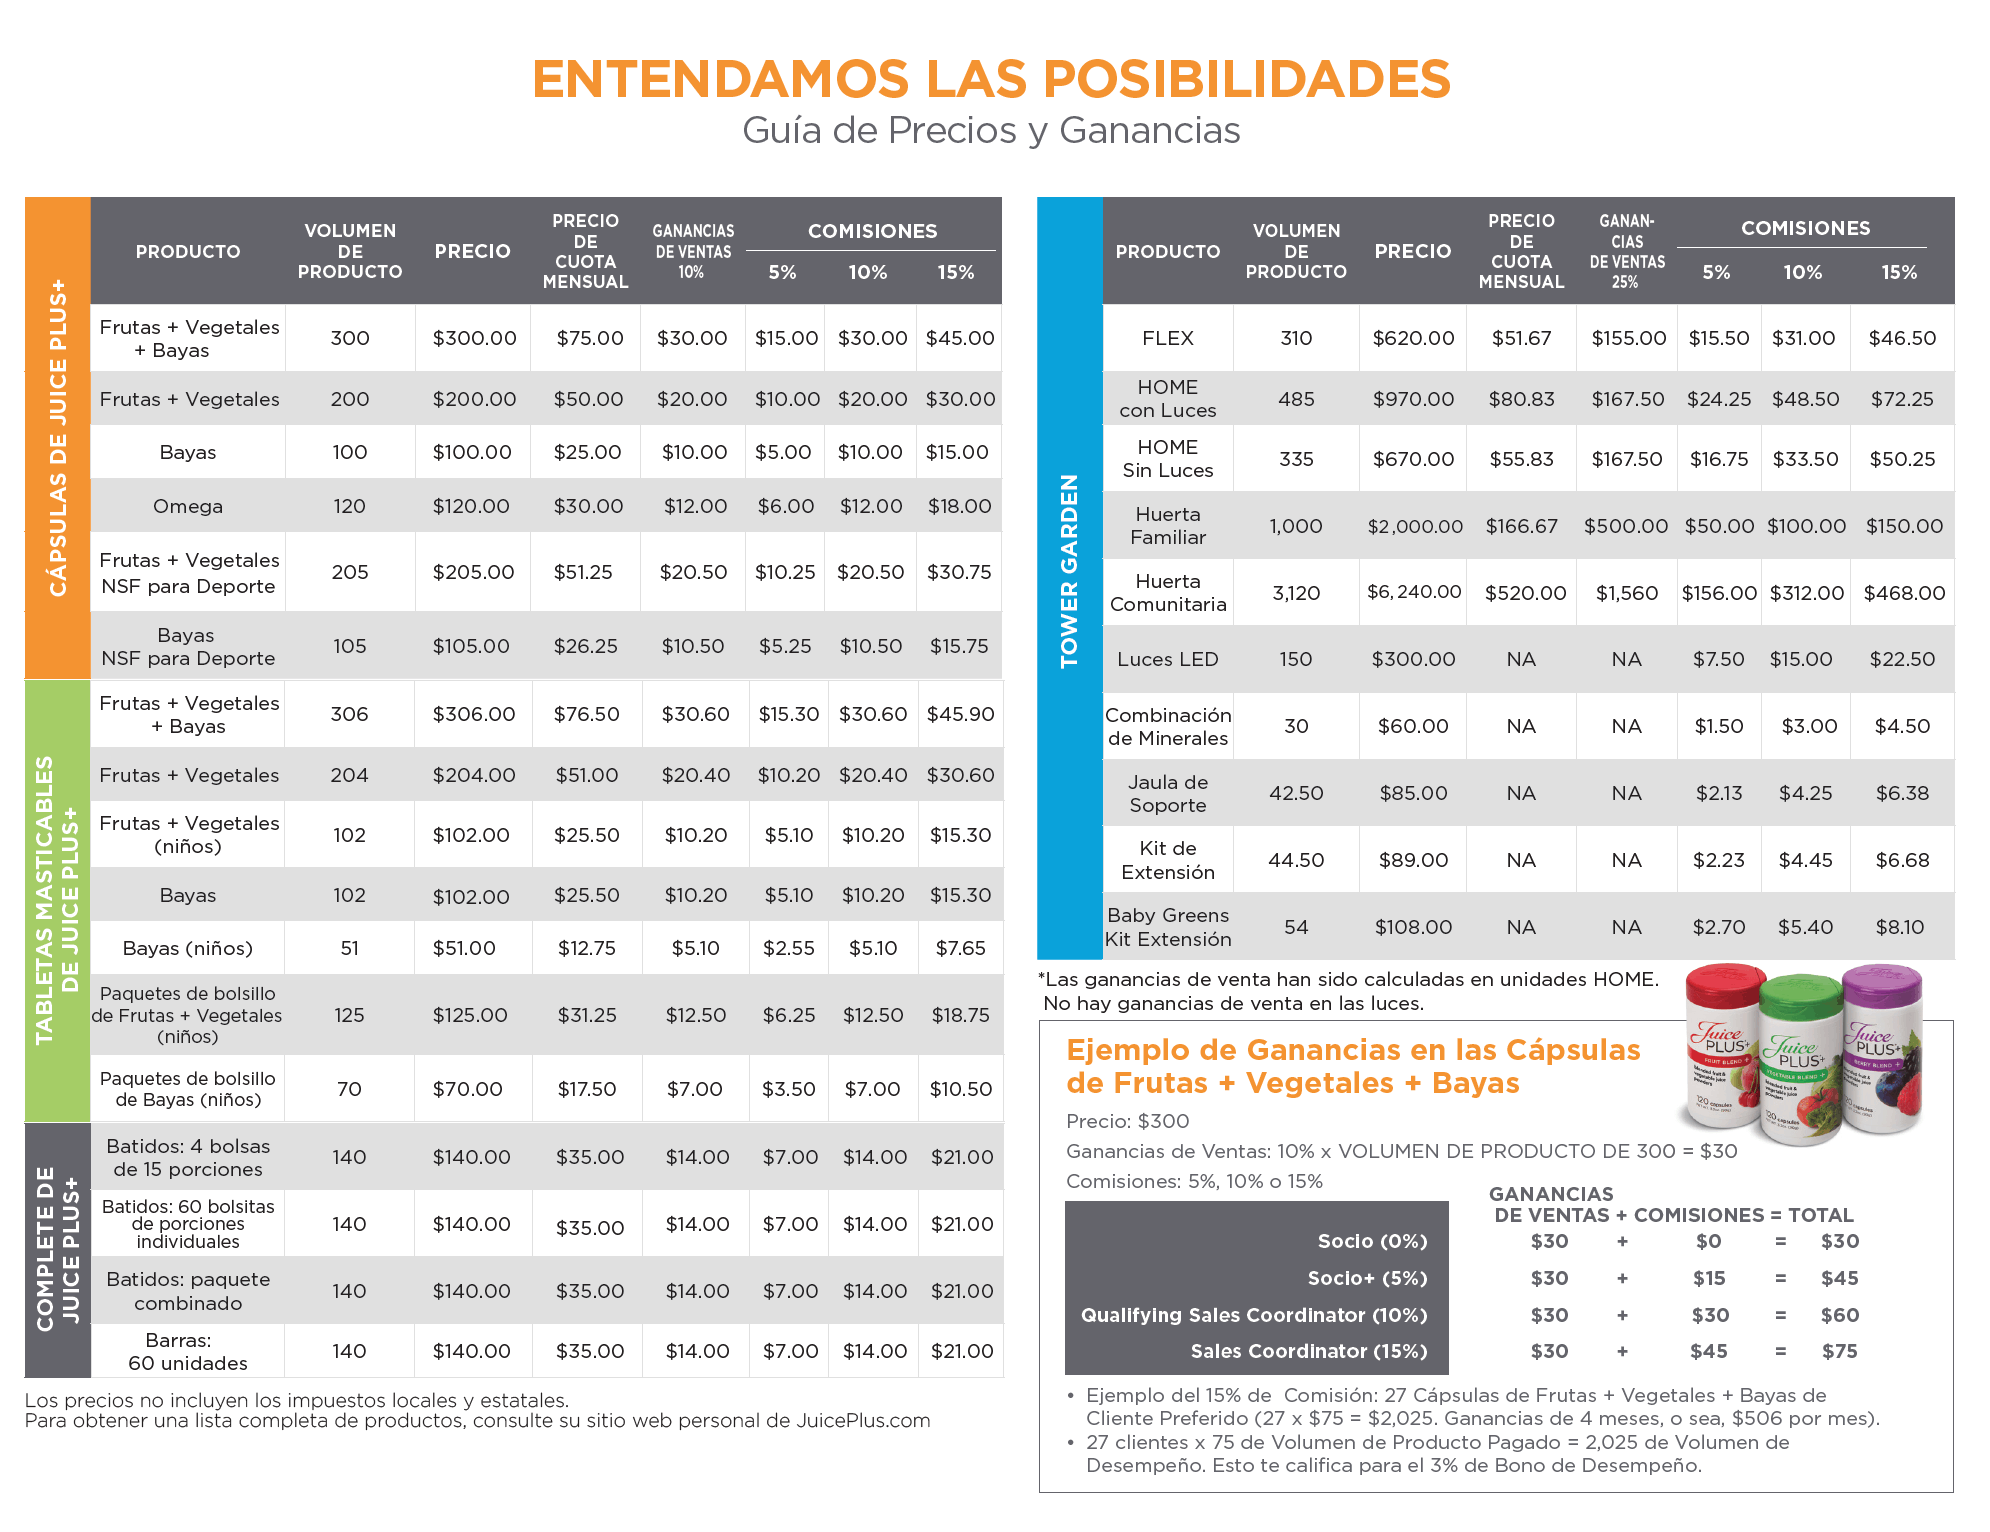 US Price Chart - Spanish